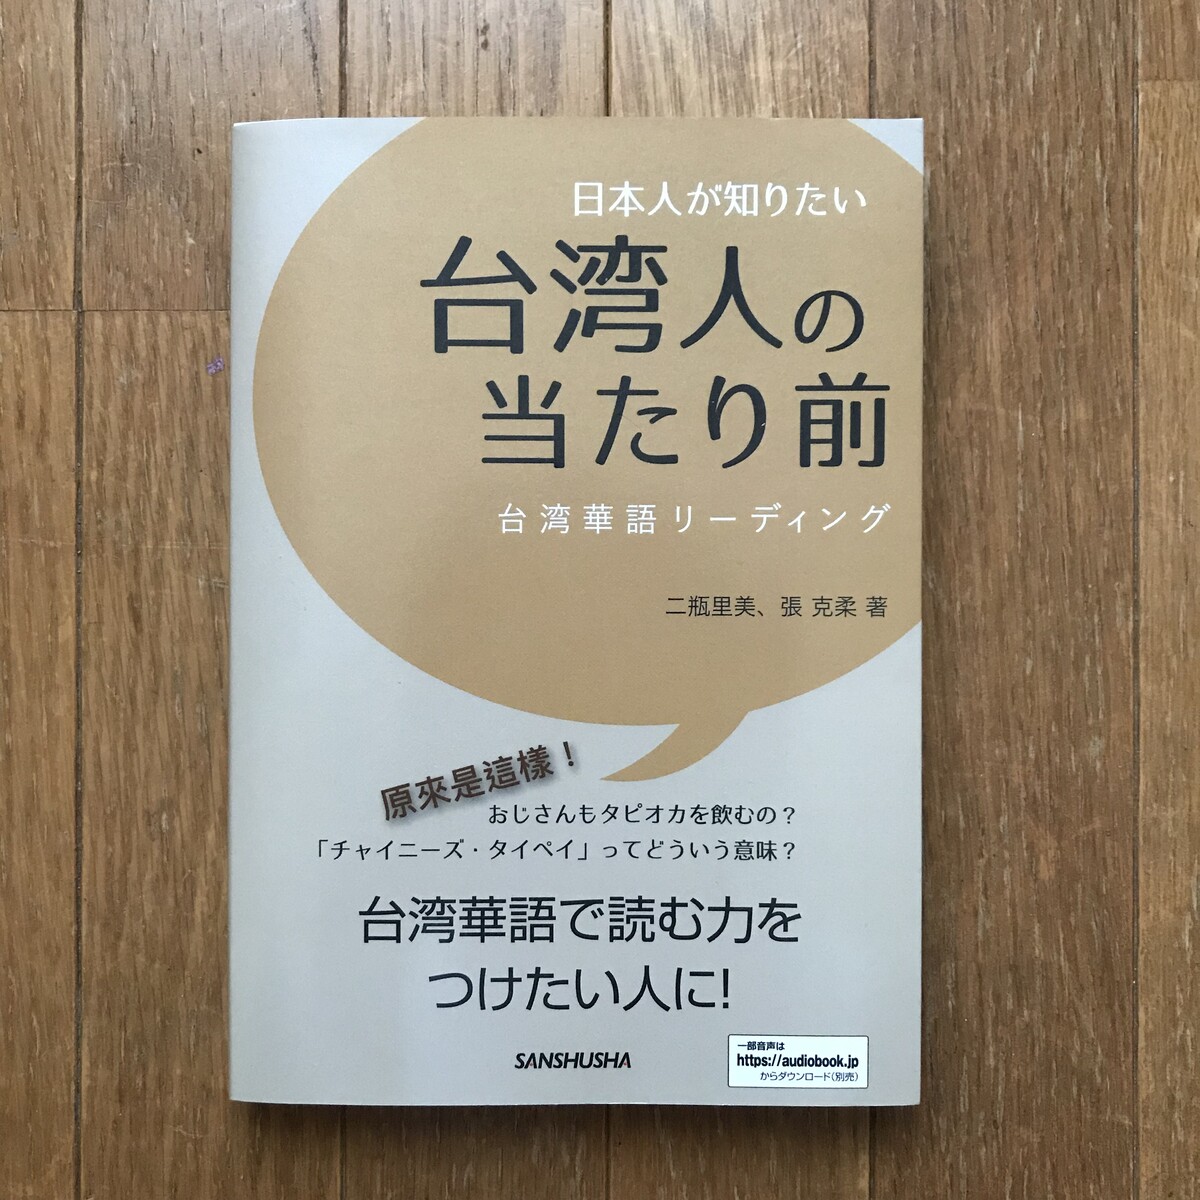 今日の1冊 日本人が知りたい台湾人の当たり前 台湾華語リーディング 二瓶里美 張克柔 実用書 三修社 太台本屋 Tai Tai Books